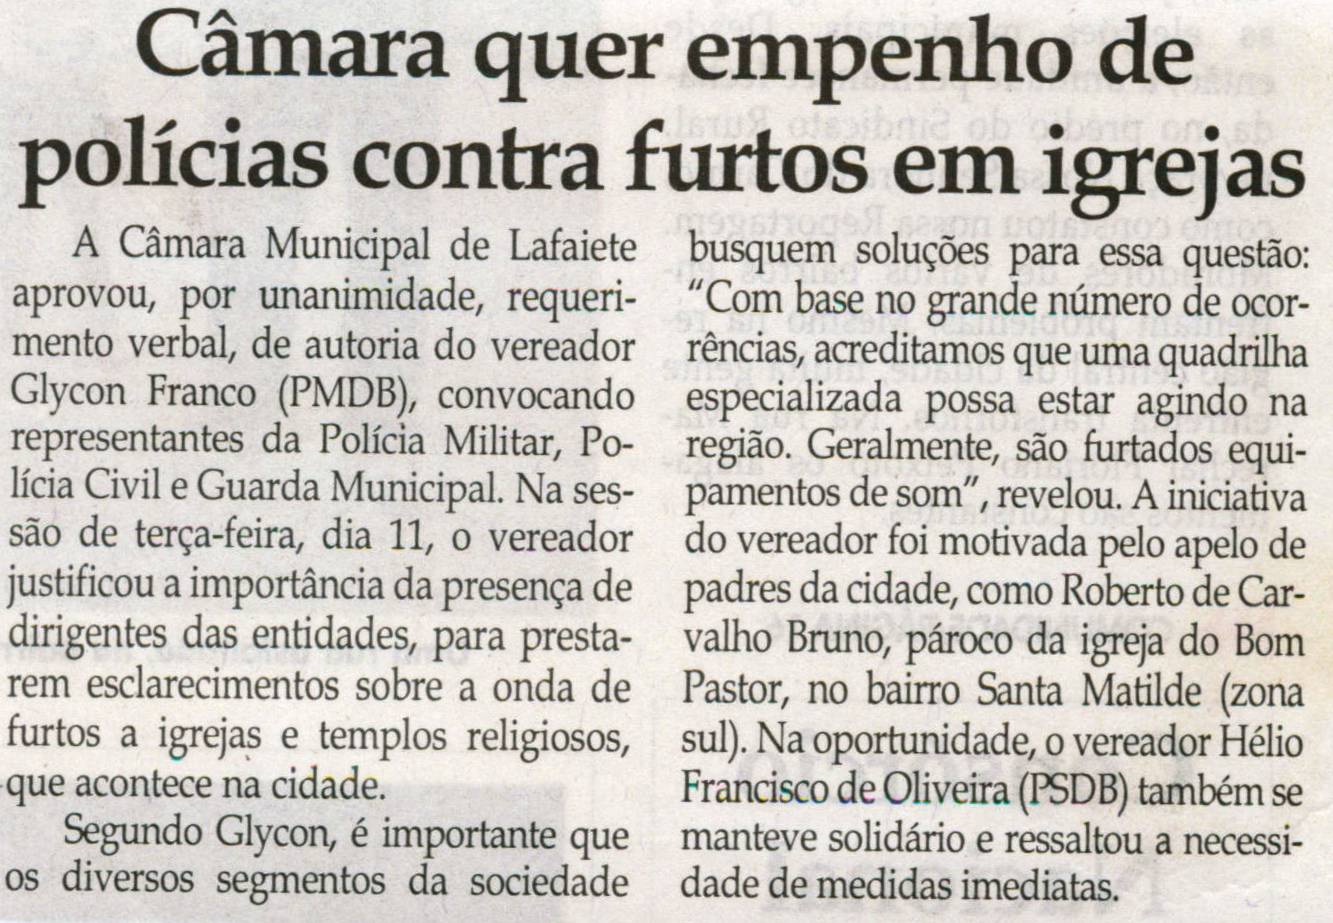 Câmara quer empenho de polícias contra furtos em igrejas. Jornal Correio da Cidade, 15 nov. 2008, p. 02.